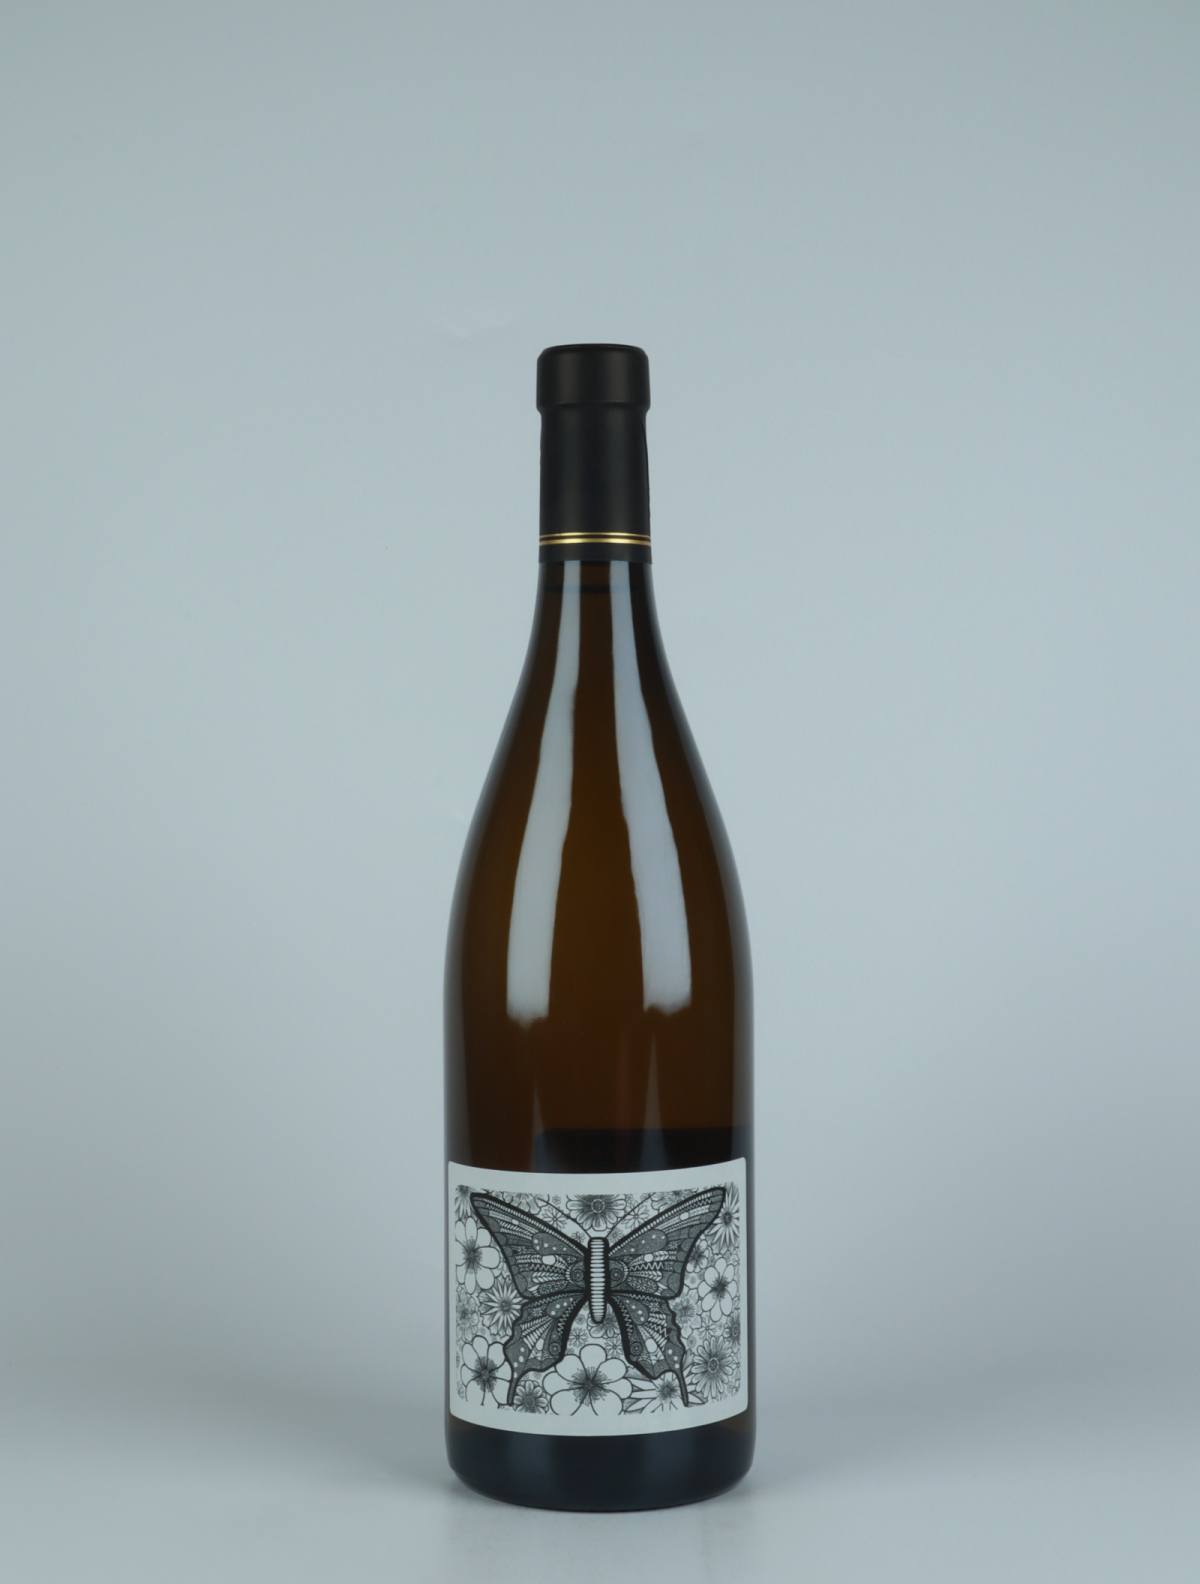 A bottle 2020 Originel White wine from Julien Courtois, Loire in France